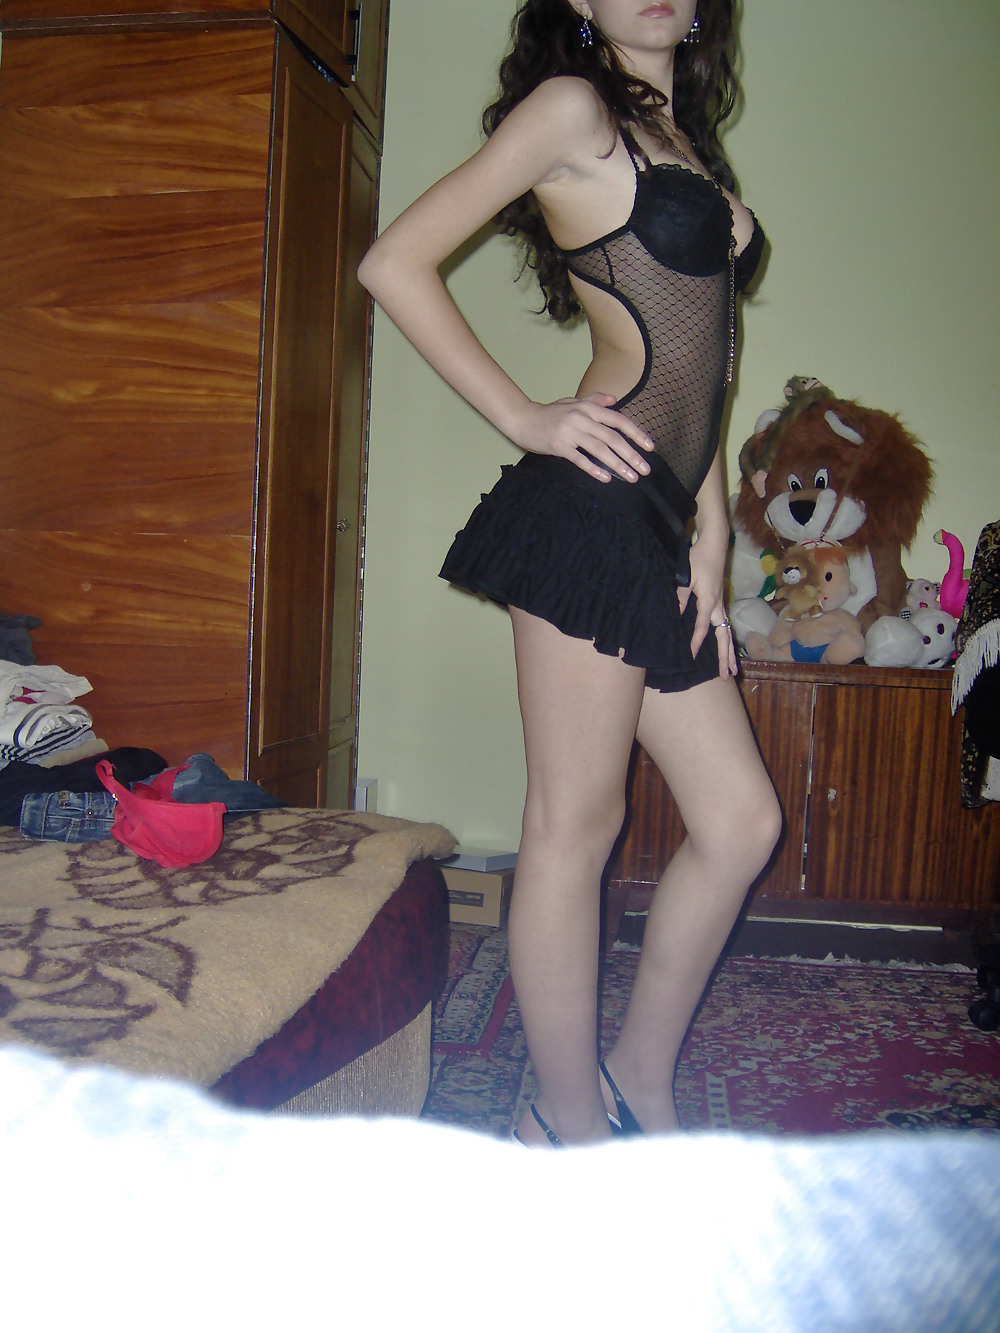 Romanian girl nice tits and ass adult photos